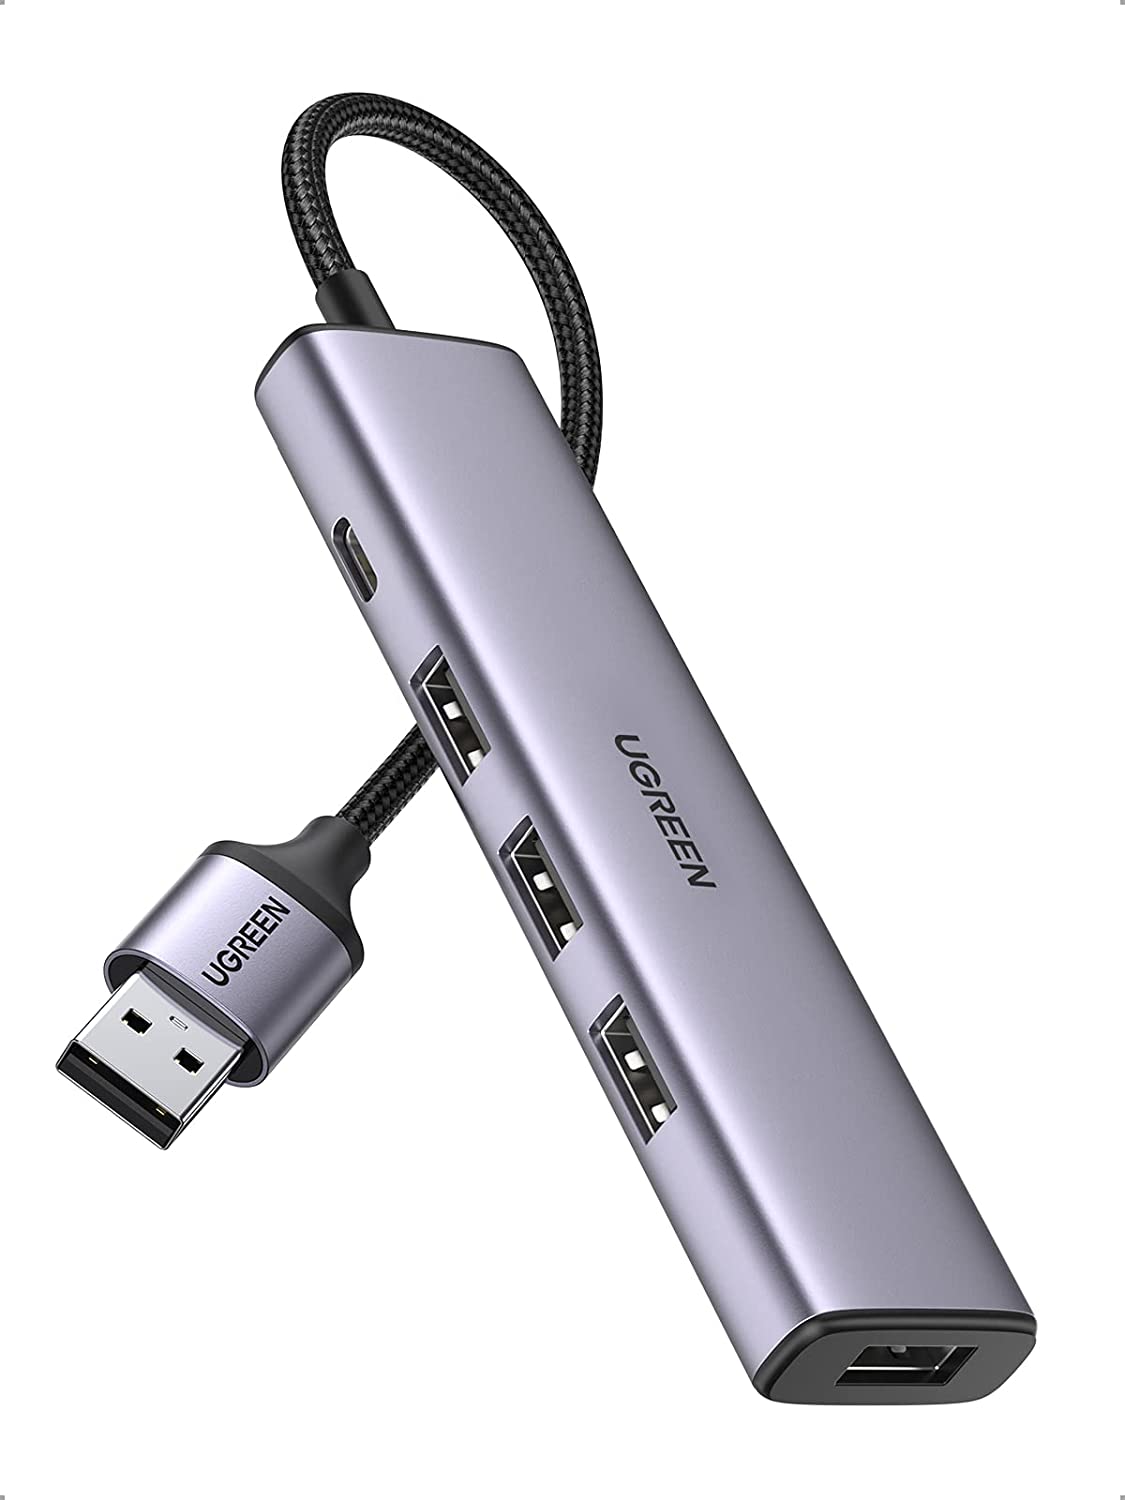 Bộ chia USB 3.0 ra 4 cổng Ugreen 20805 vỏ nhôm